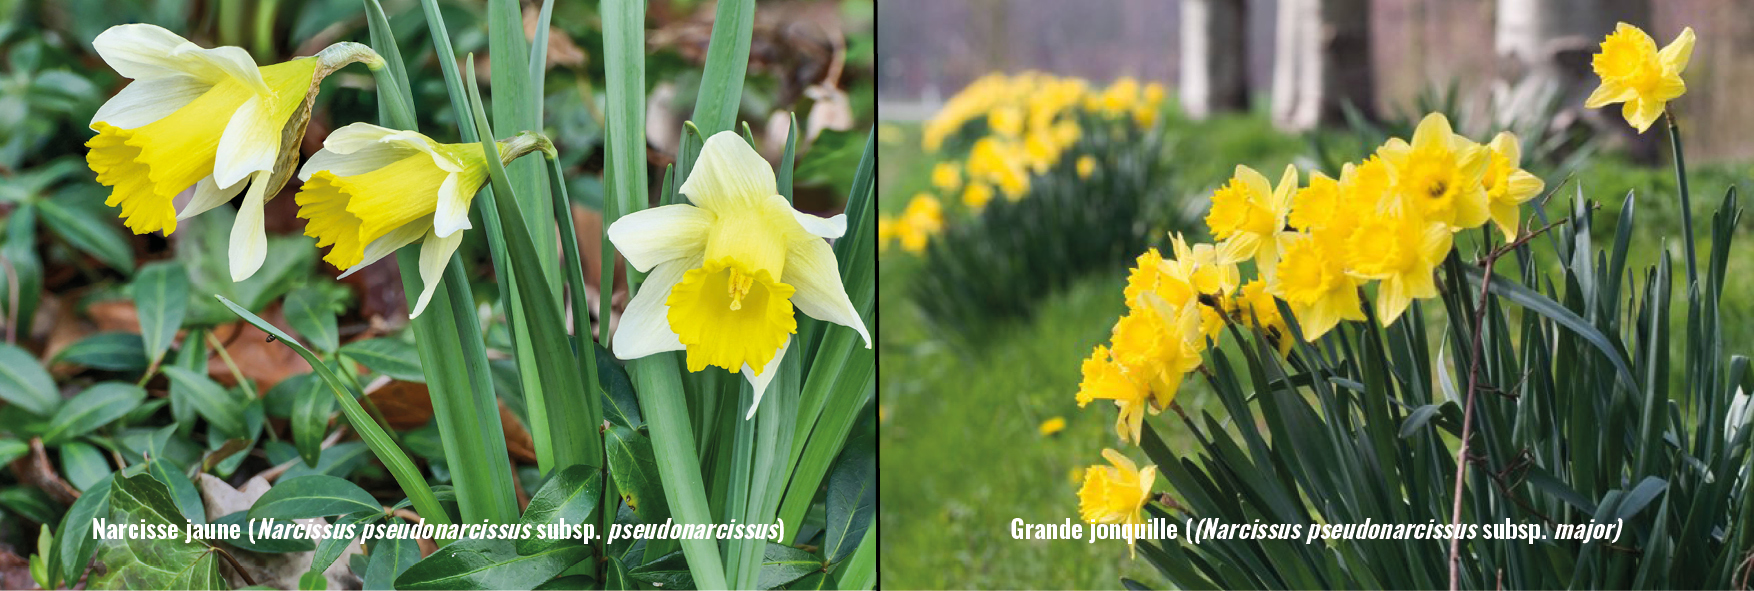 Narcisse jaune vs Grande jonquille